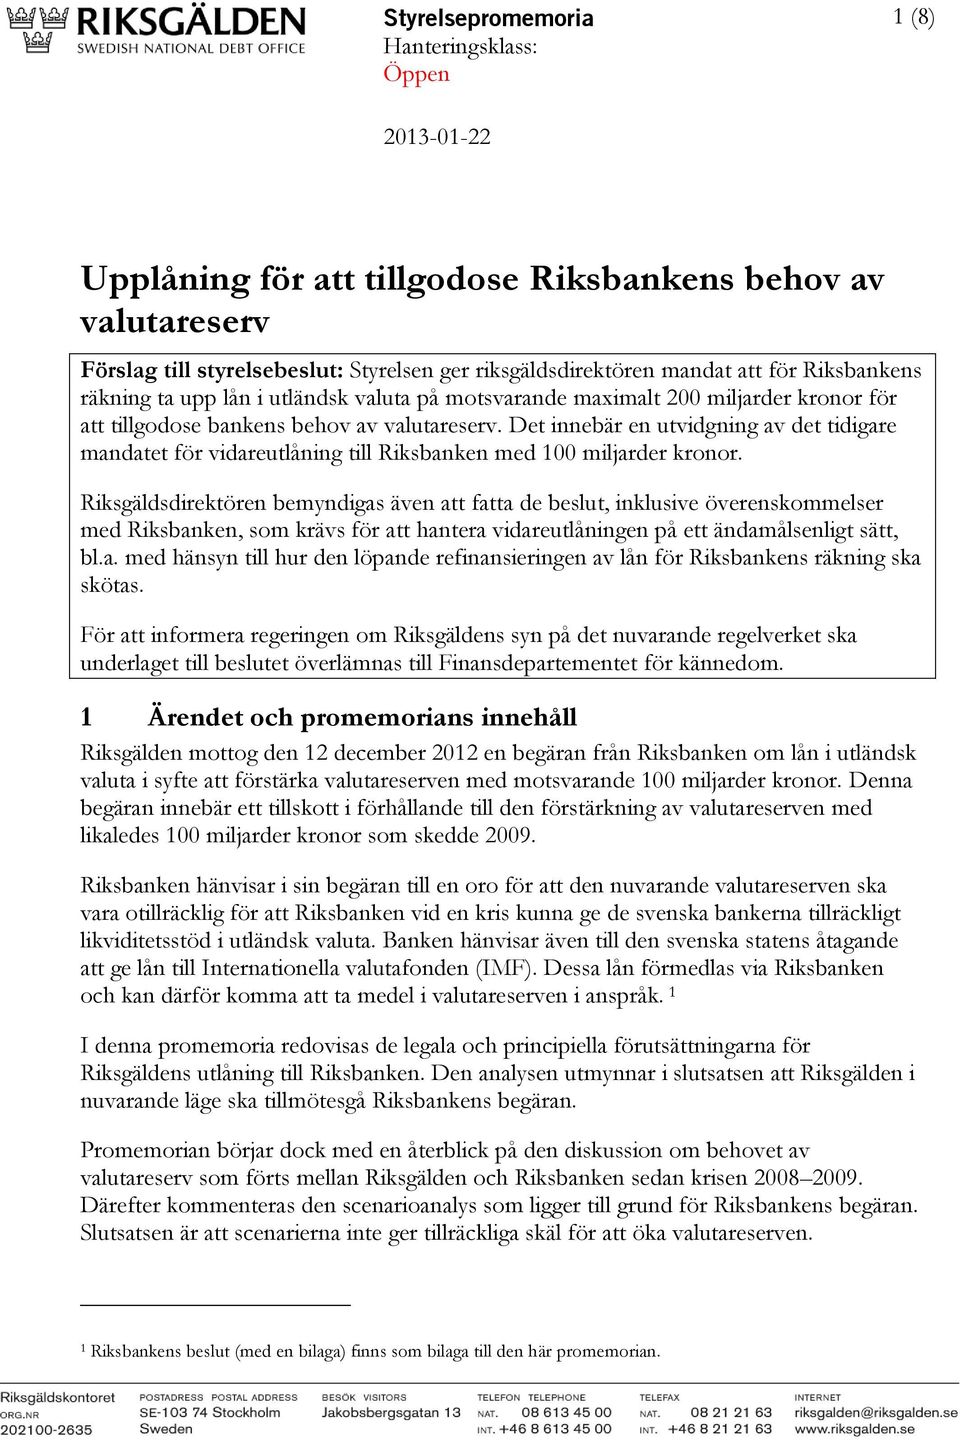 Det innebär en utvidgning av det tidigare mandatet för vidareutlåning till Riksbanken med 100 miljarder kronor.